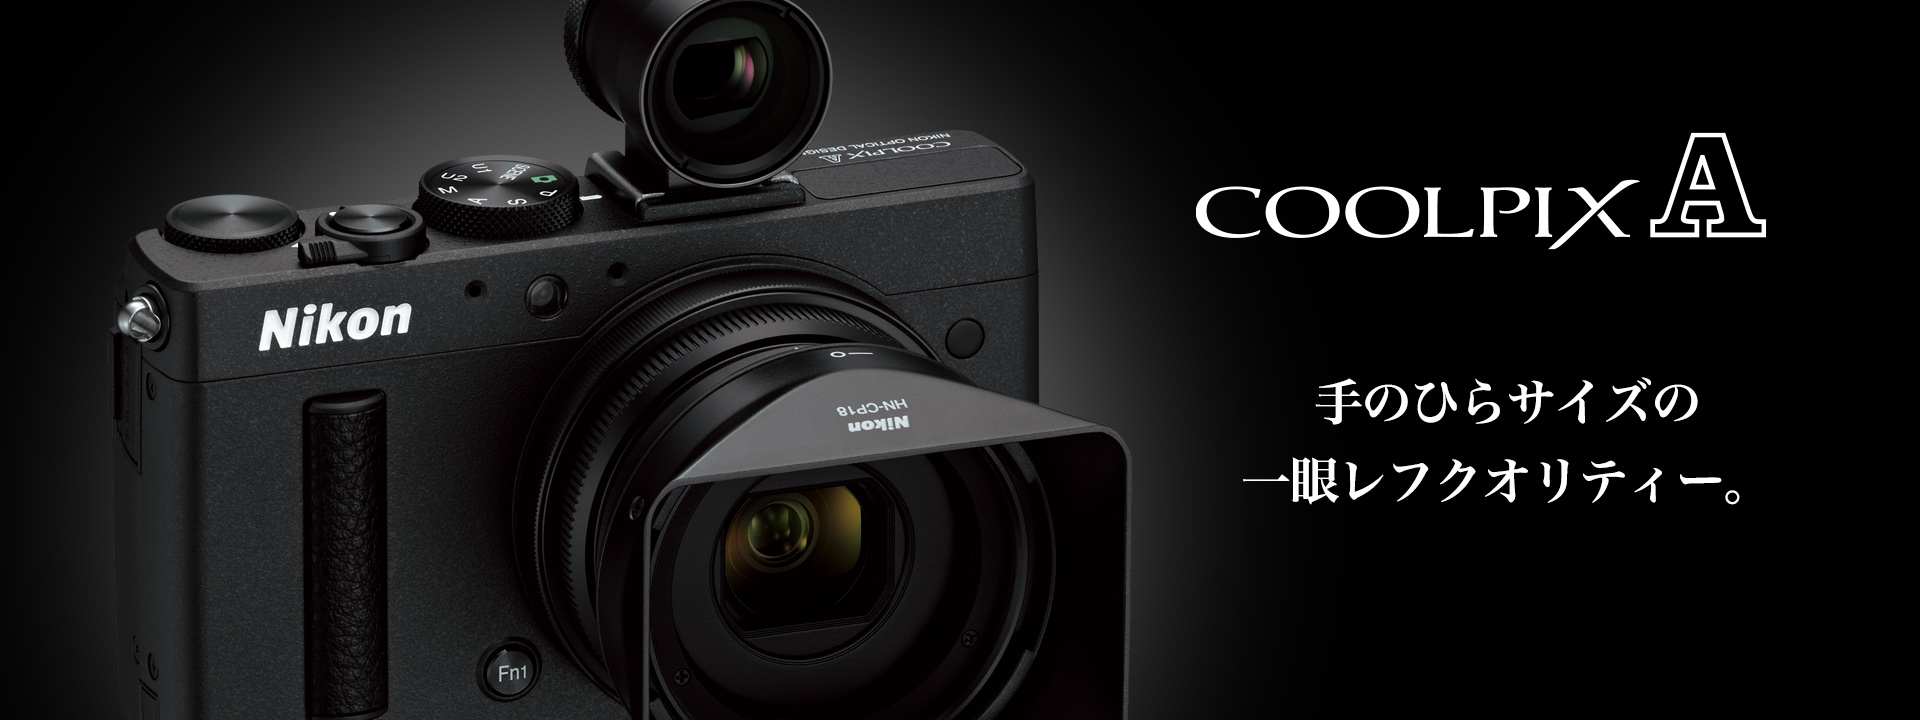 COOLPIX A - 概要 | コンパクトデジタルカメラ | ニコンイメージング